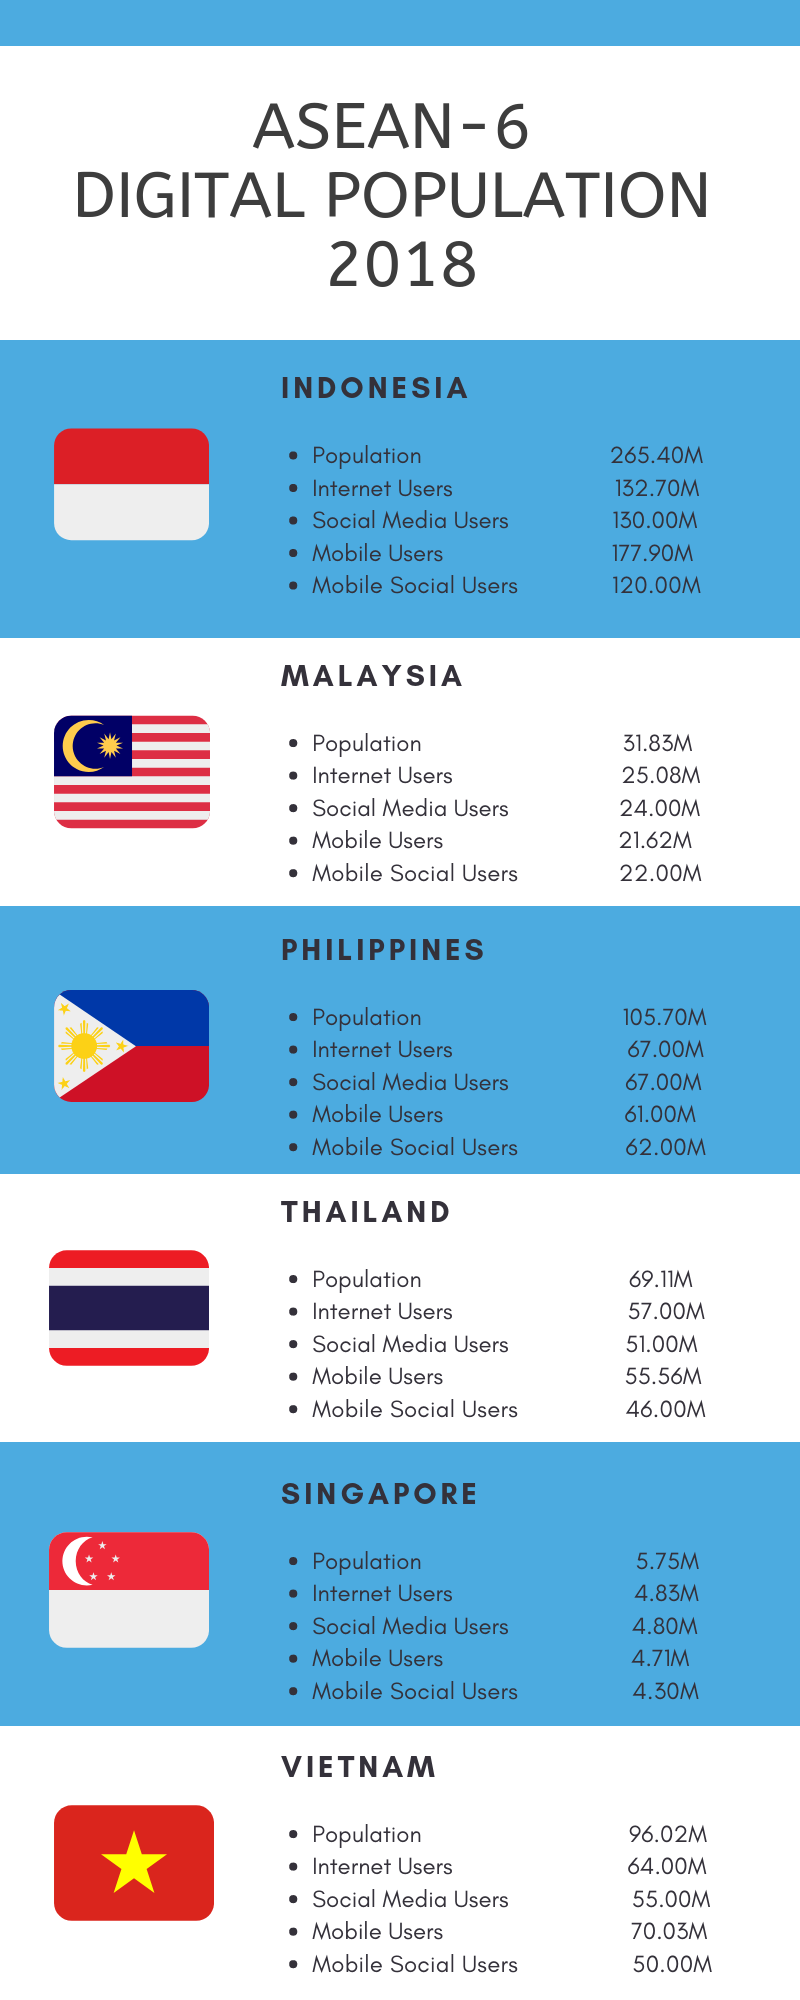 Asean Top 6 Population Figures